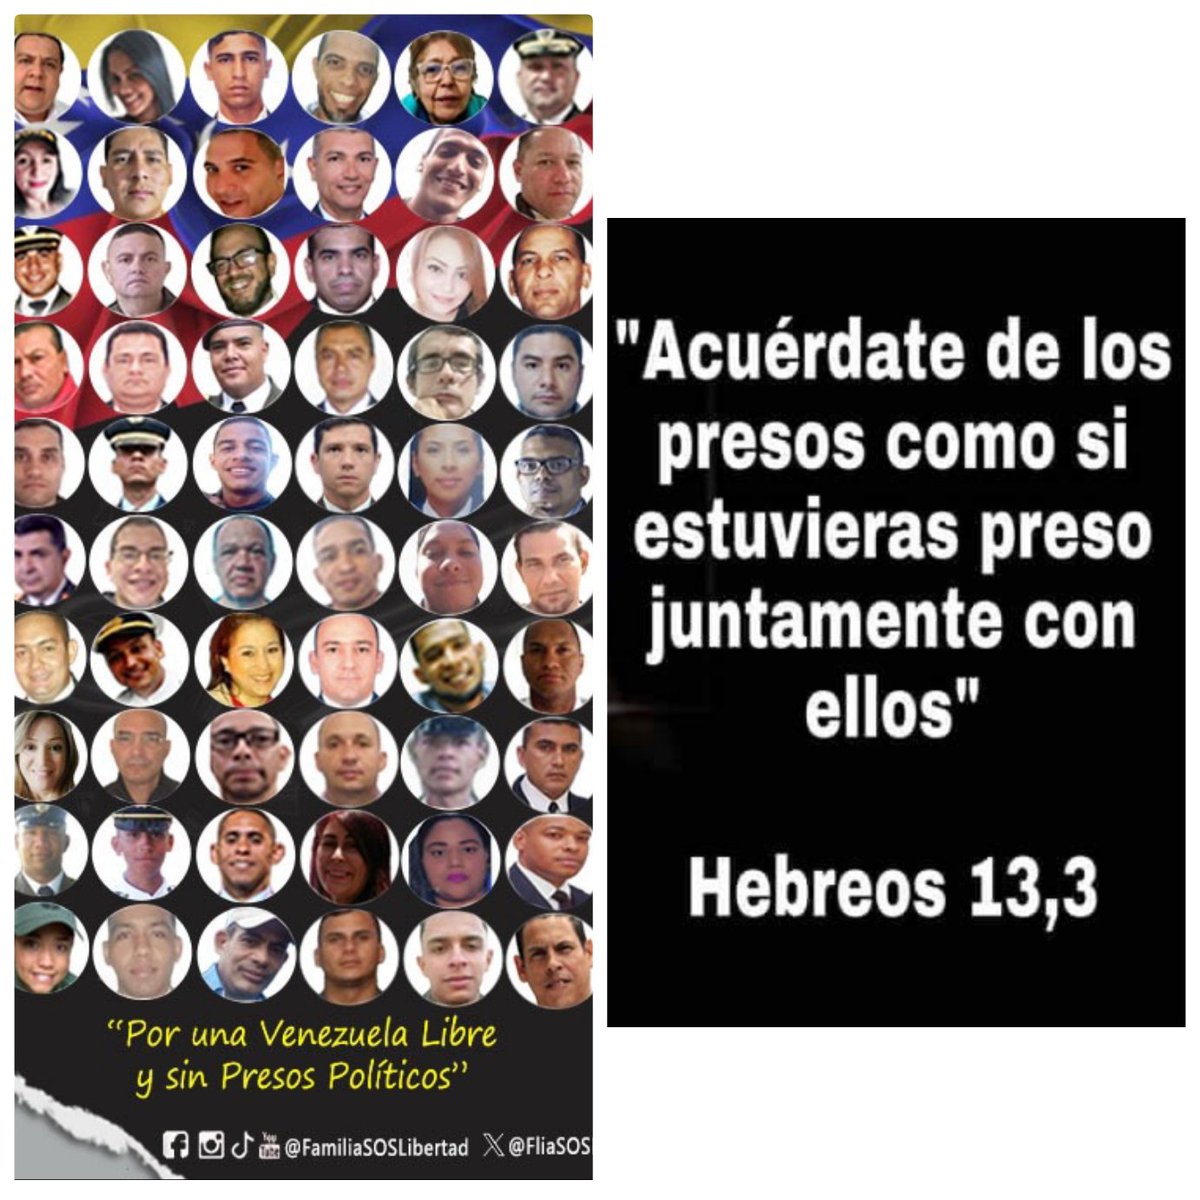 Deseamos en Dios todopoderoso la liberación de cada uno de los presos políticos y que puedan reunirse con sus familiares.
#VenezuelaDeCristo #VivaCristoRey #LibertadATodosLosPresosPoliticos #DDHH #NiUnDiaMasTrasLasRejas #FamiliasReunidas